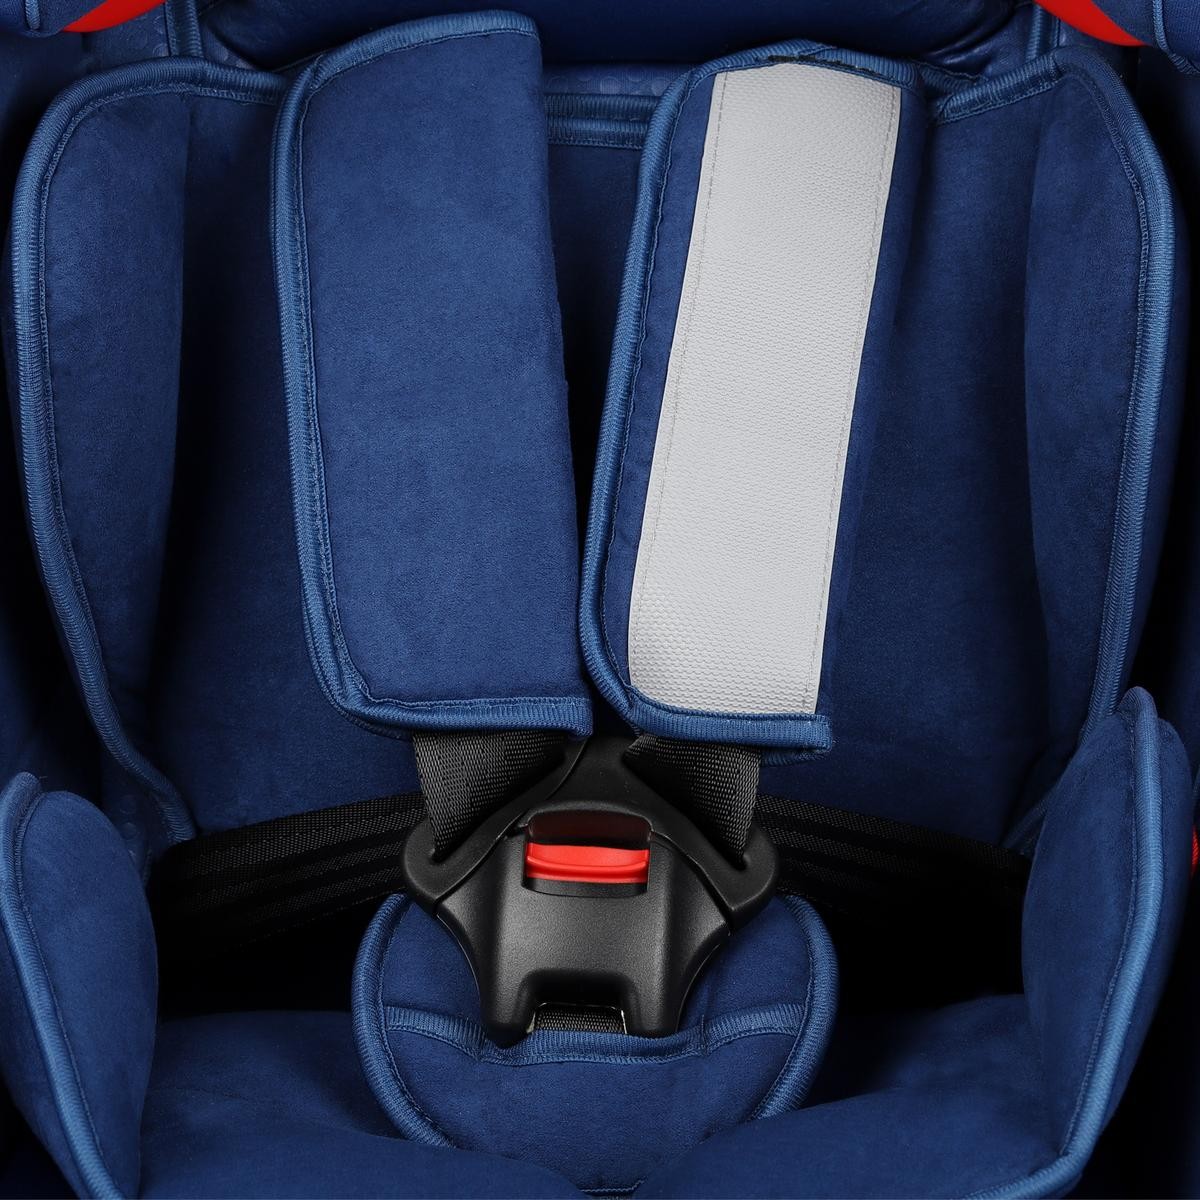 capsula Kids car seats 771140 buy online